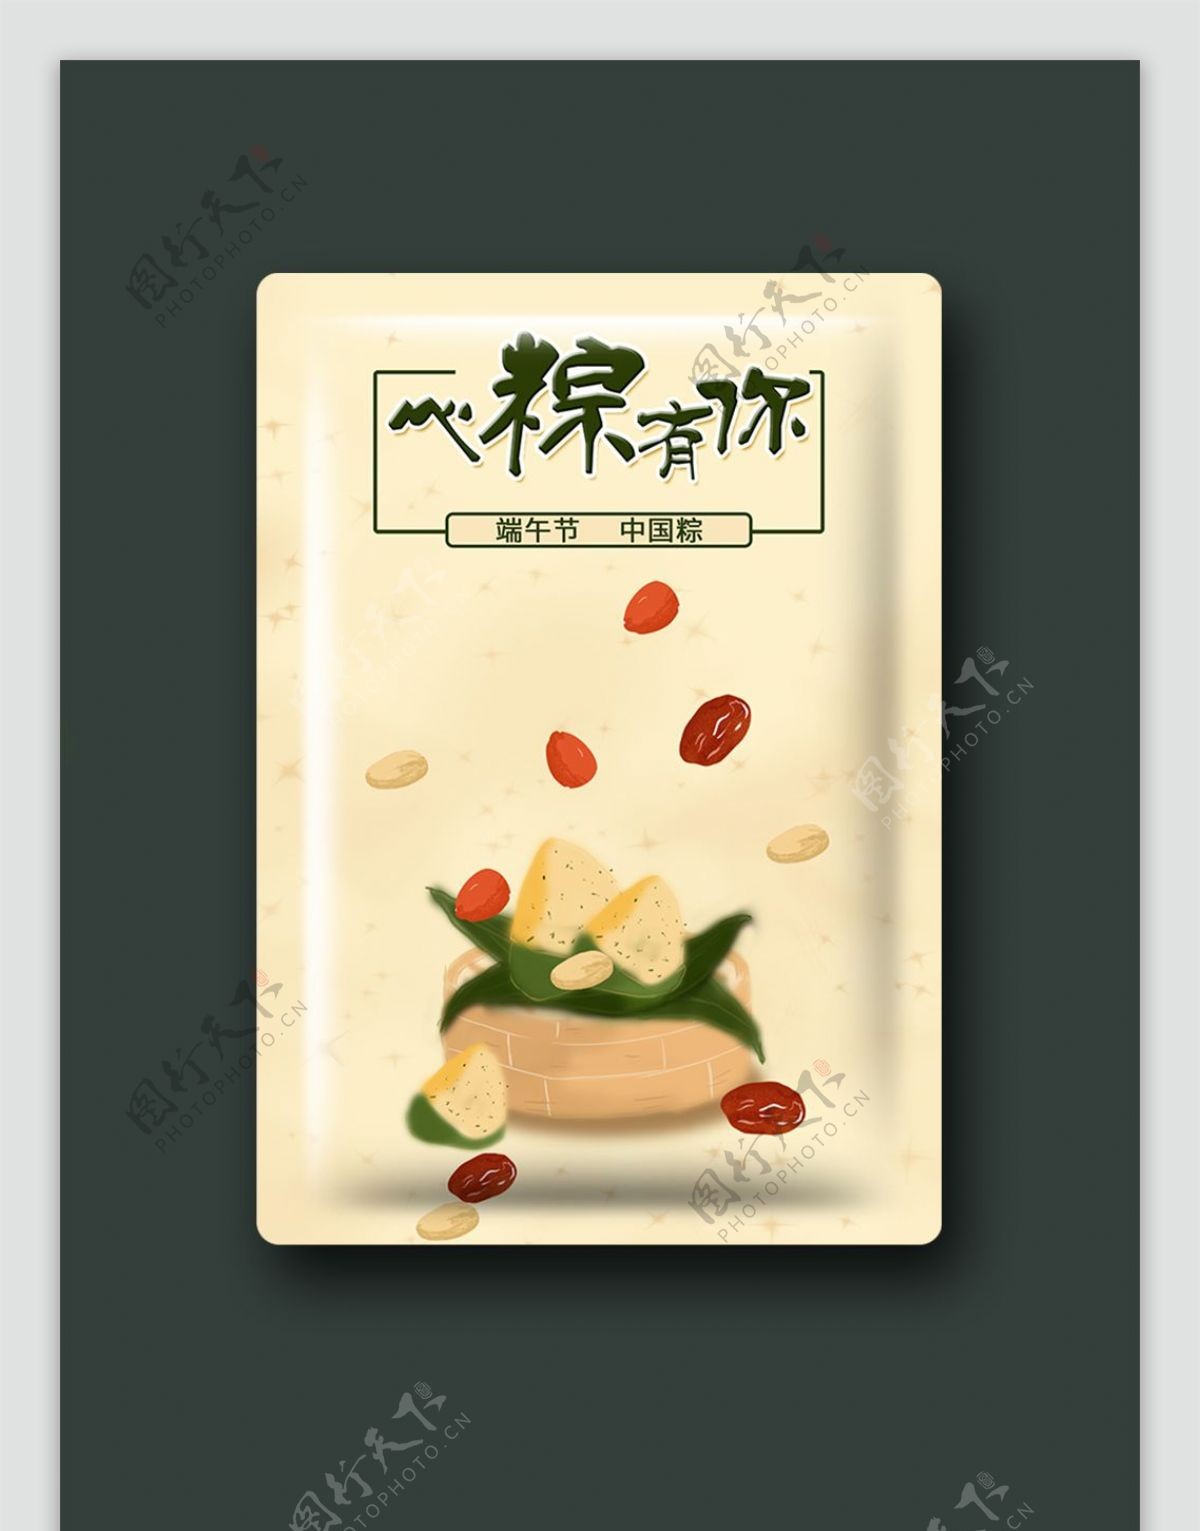 端午节粽子包装图